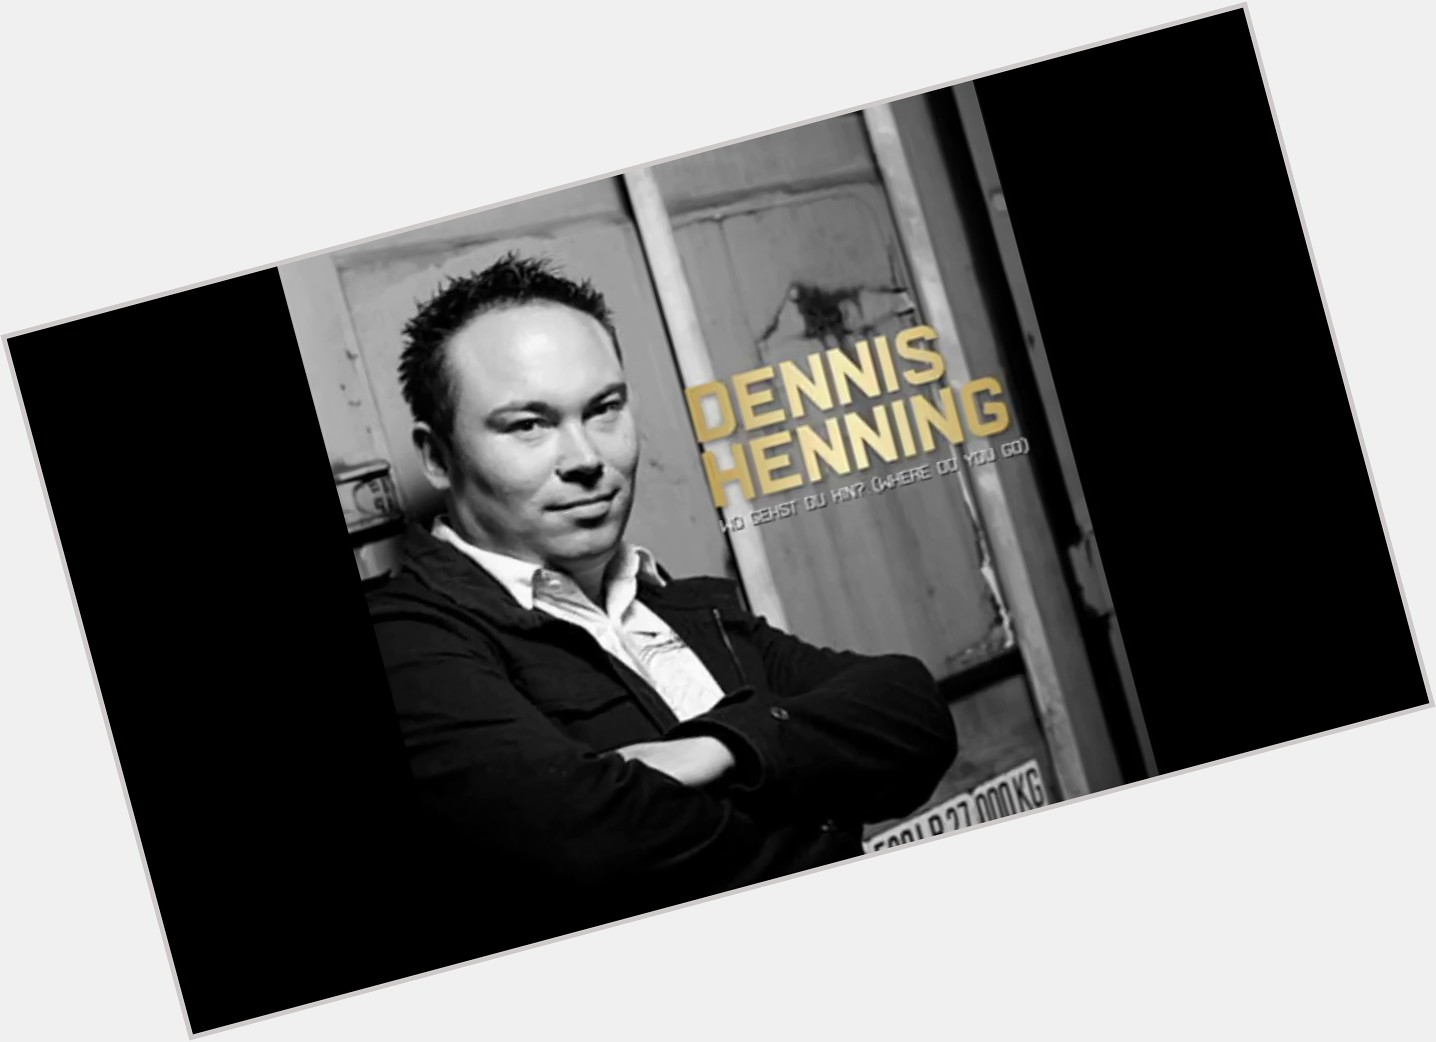 Dennis Hennig sexy 3